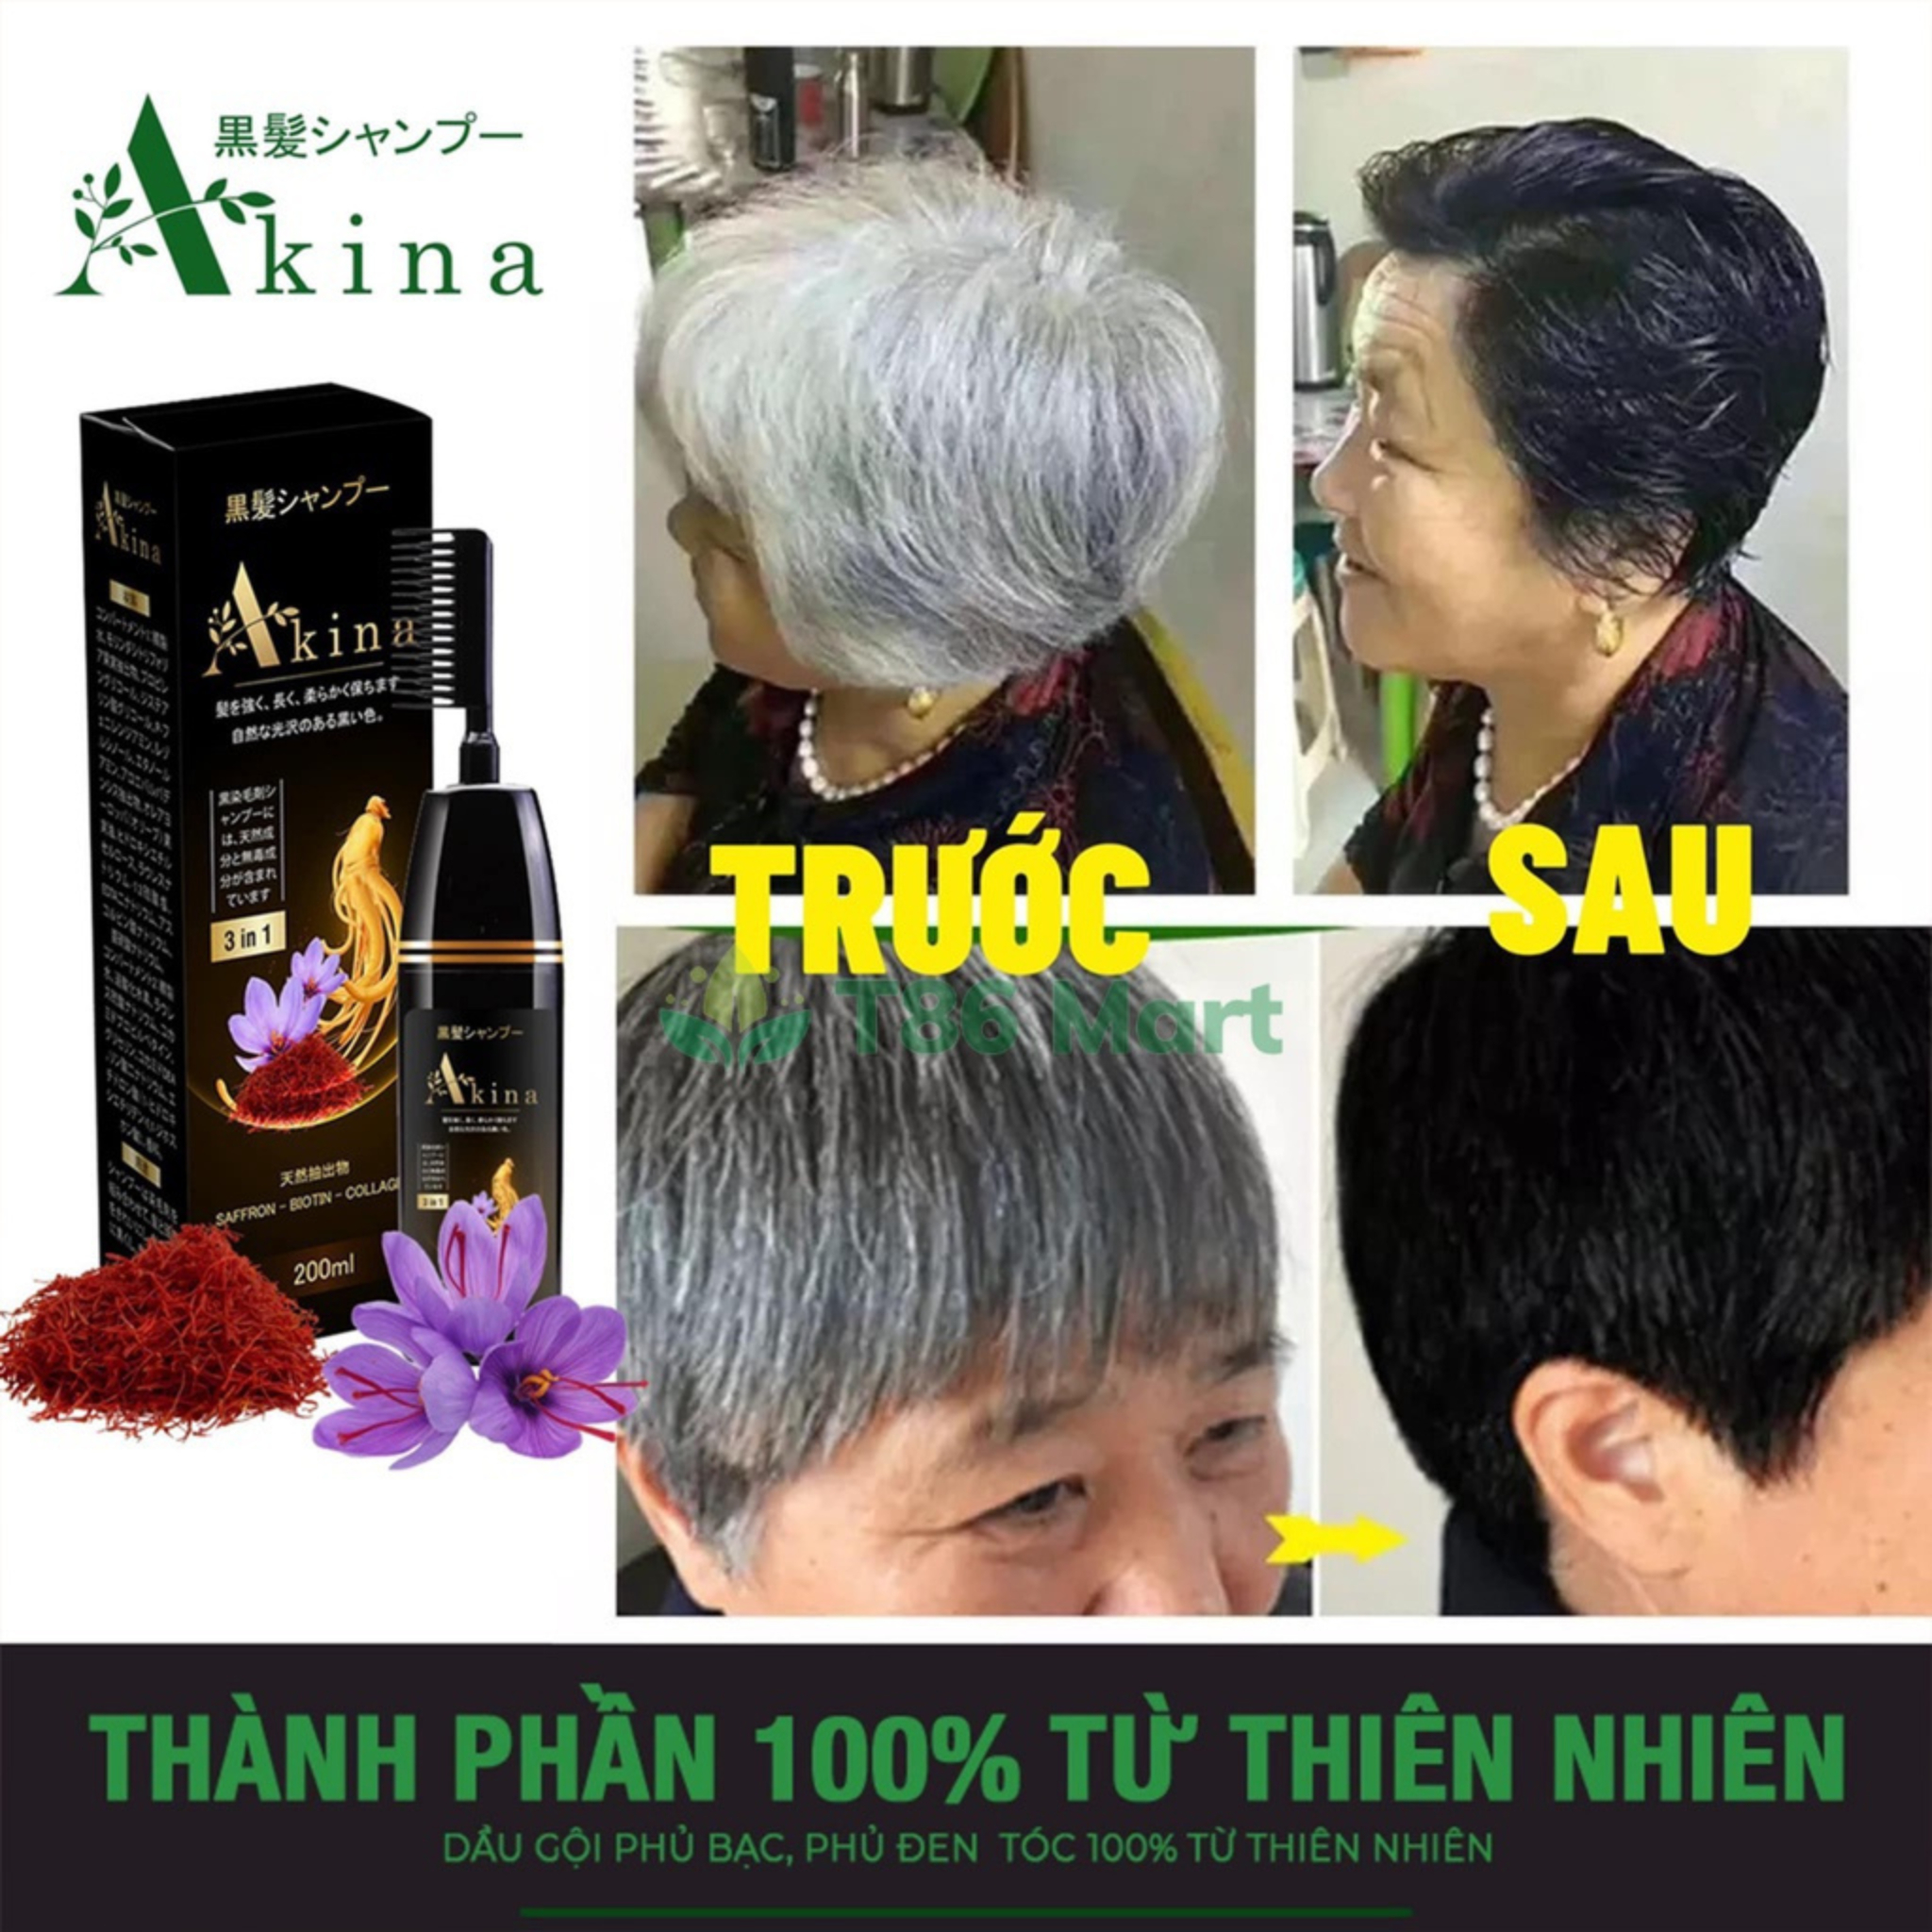 Lược phủ bạc akina thực sự hiệu quả trong việc ngăn ngừa tóc bạc và giúp tóc trông khỏe mạnh hơn